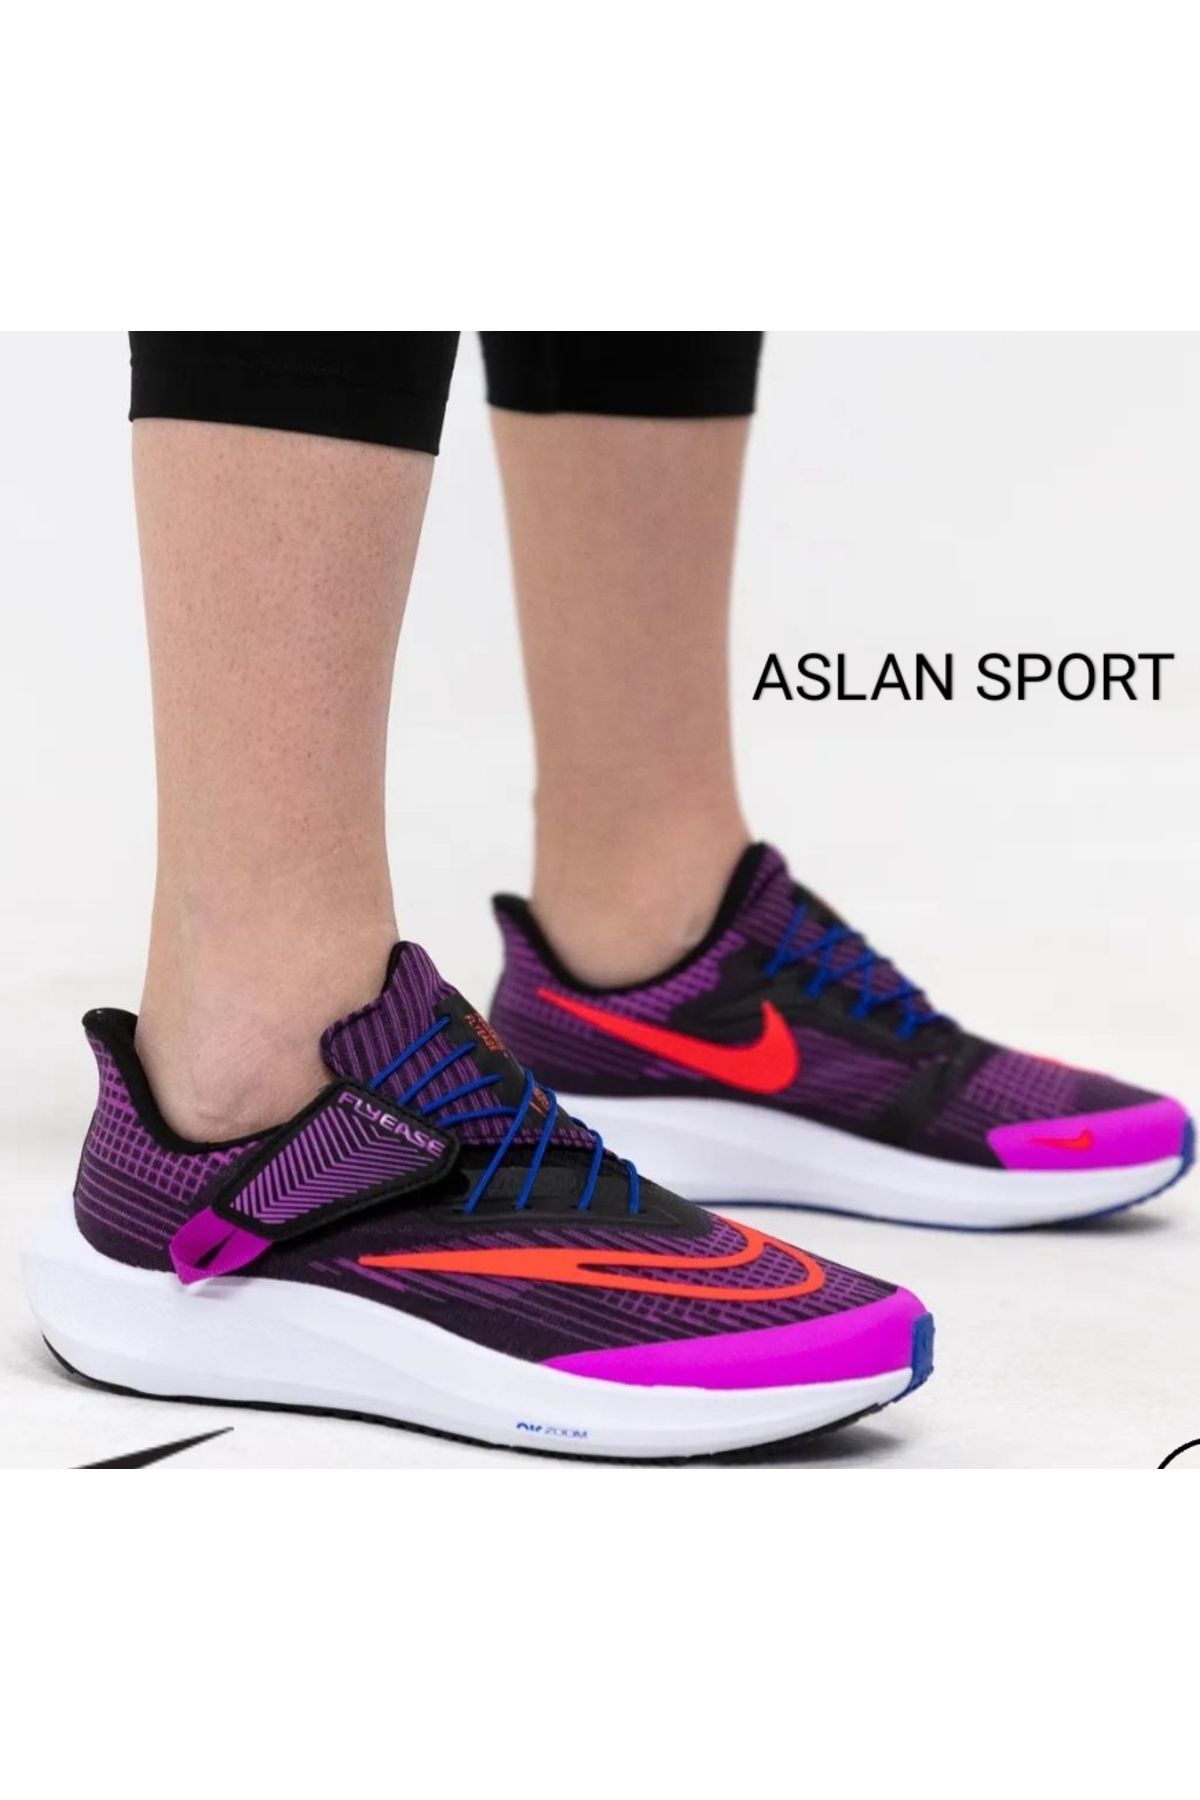 Nike Pegasus FlyEase
Kadın Kolay Açma/Kapama Koşu Ayakkabısı